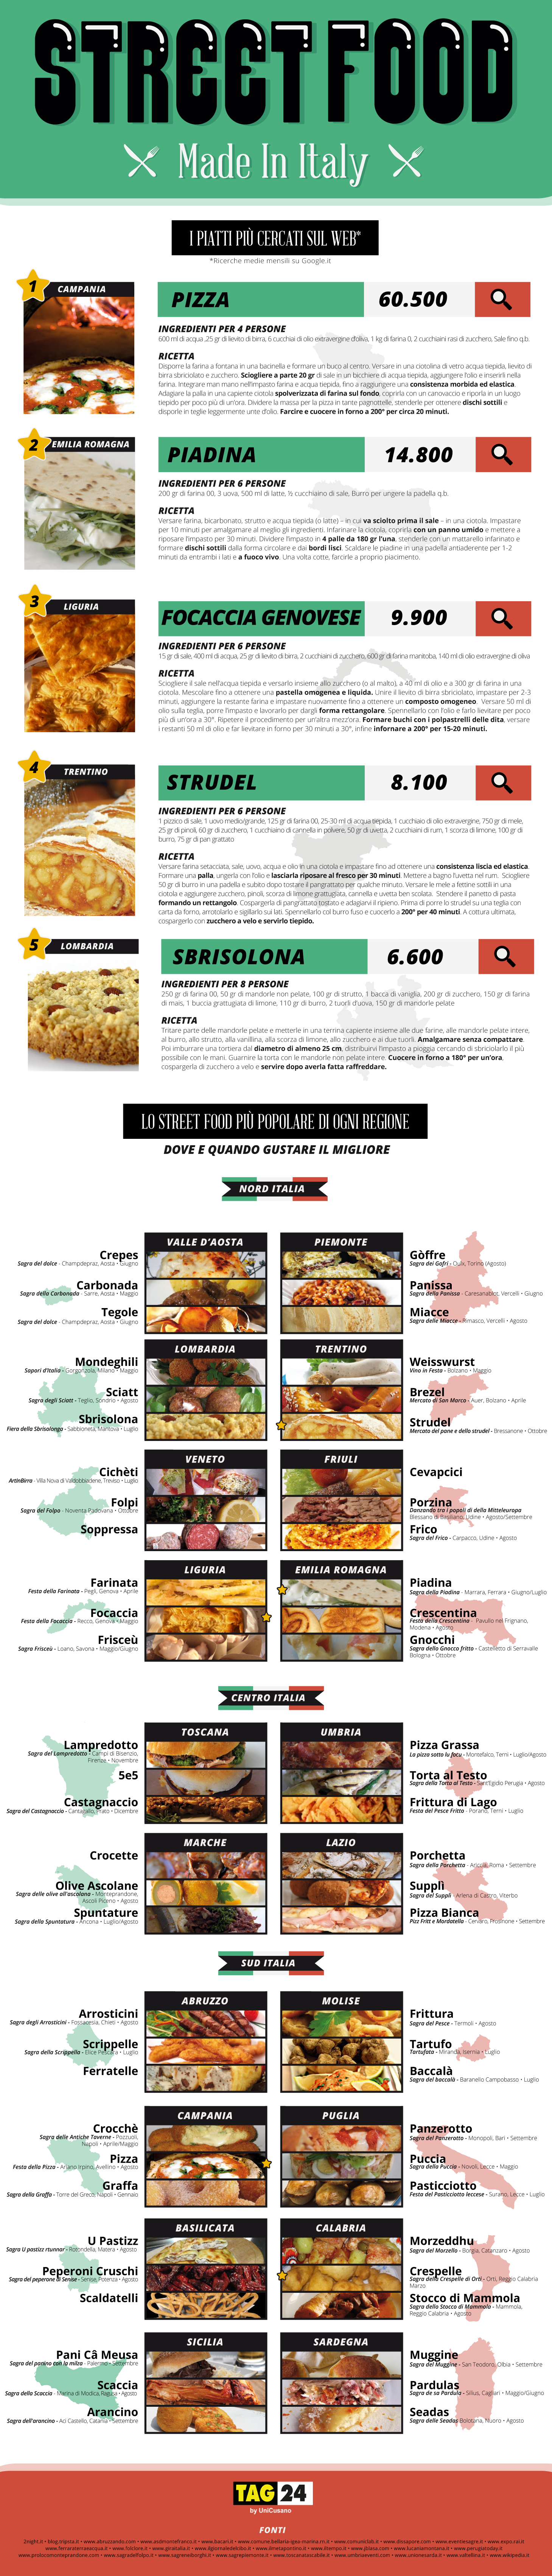 Street food: il tour gastronomico d'Italia in un'infografica